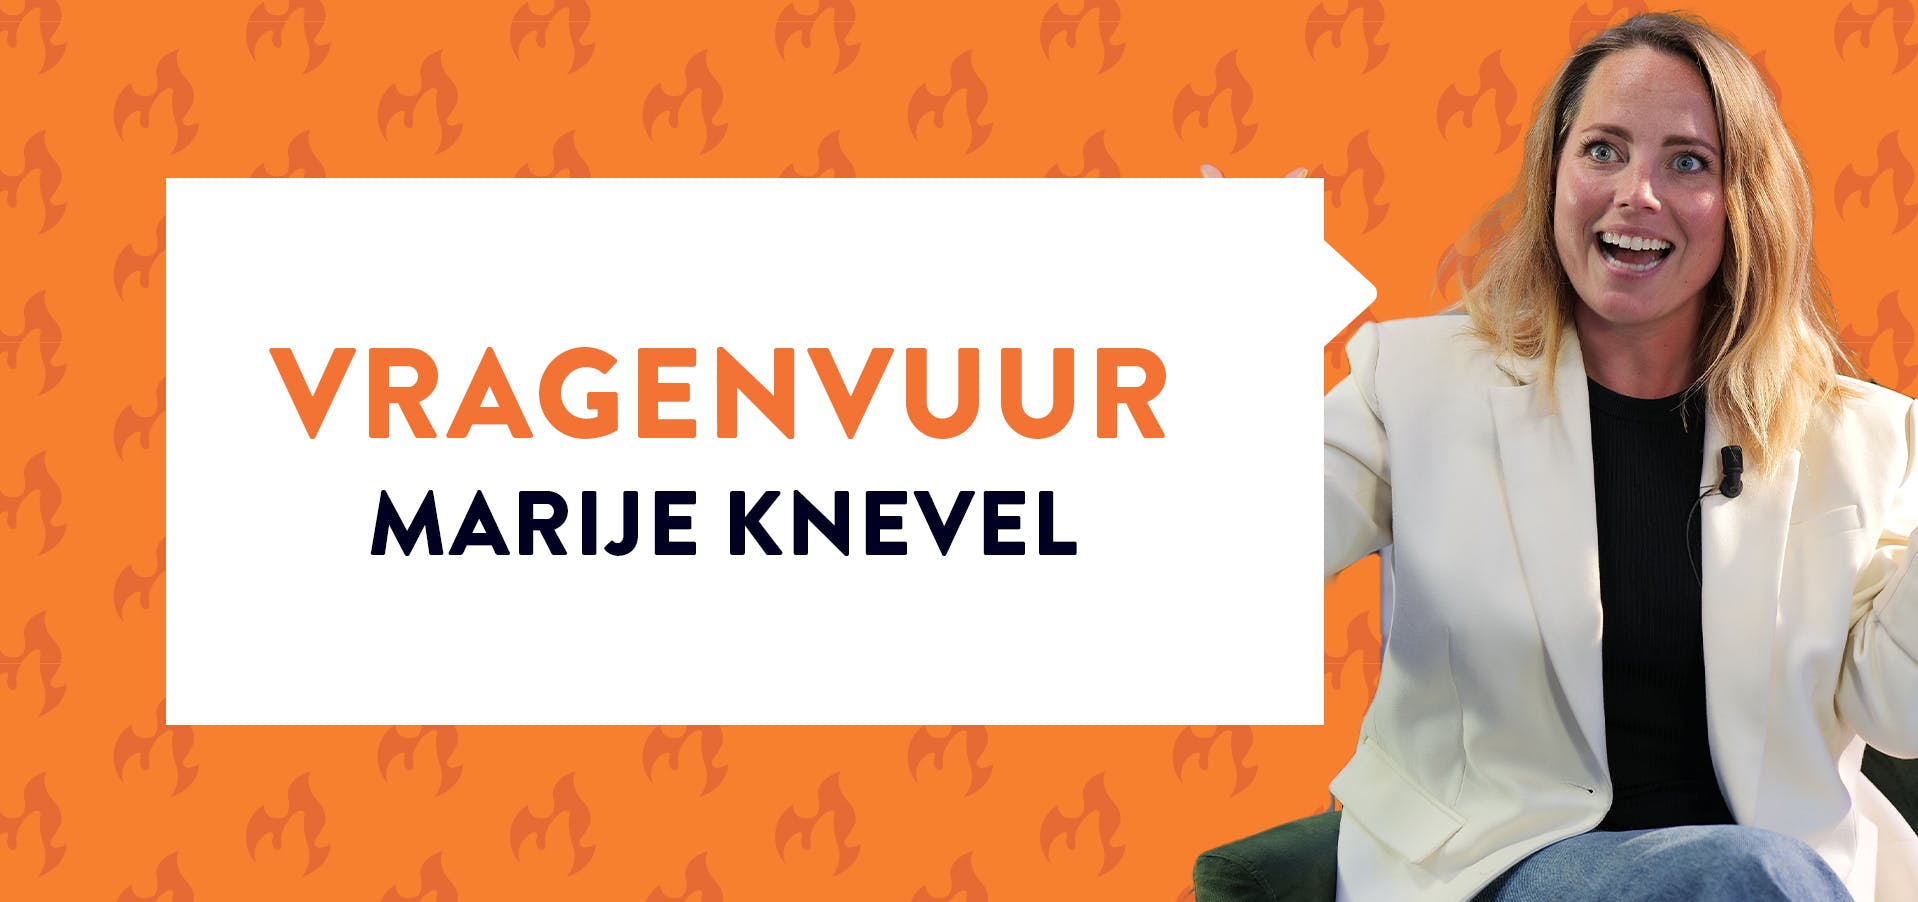 Marije Knevel met open mond in witte blazer bij oranje achtergrond met tekst 'vragenvuur marije knevel'